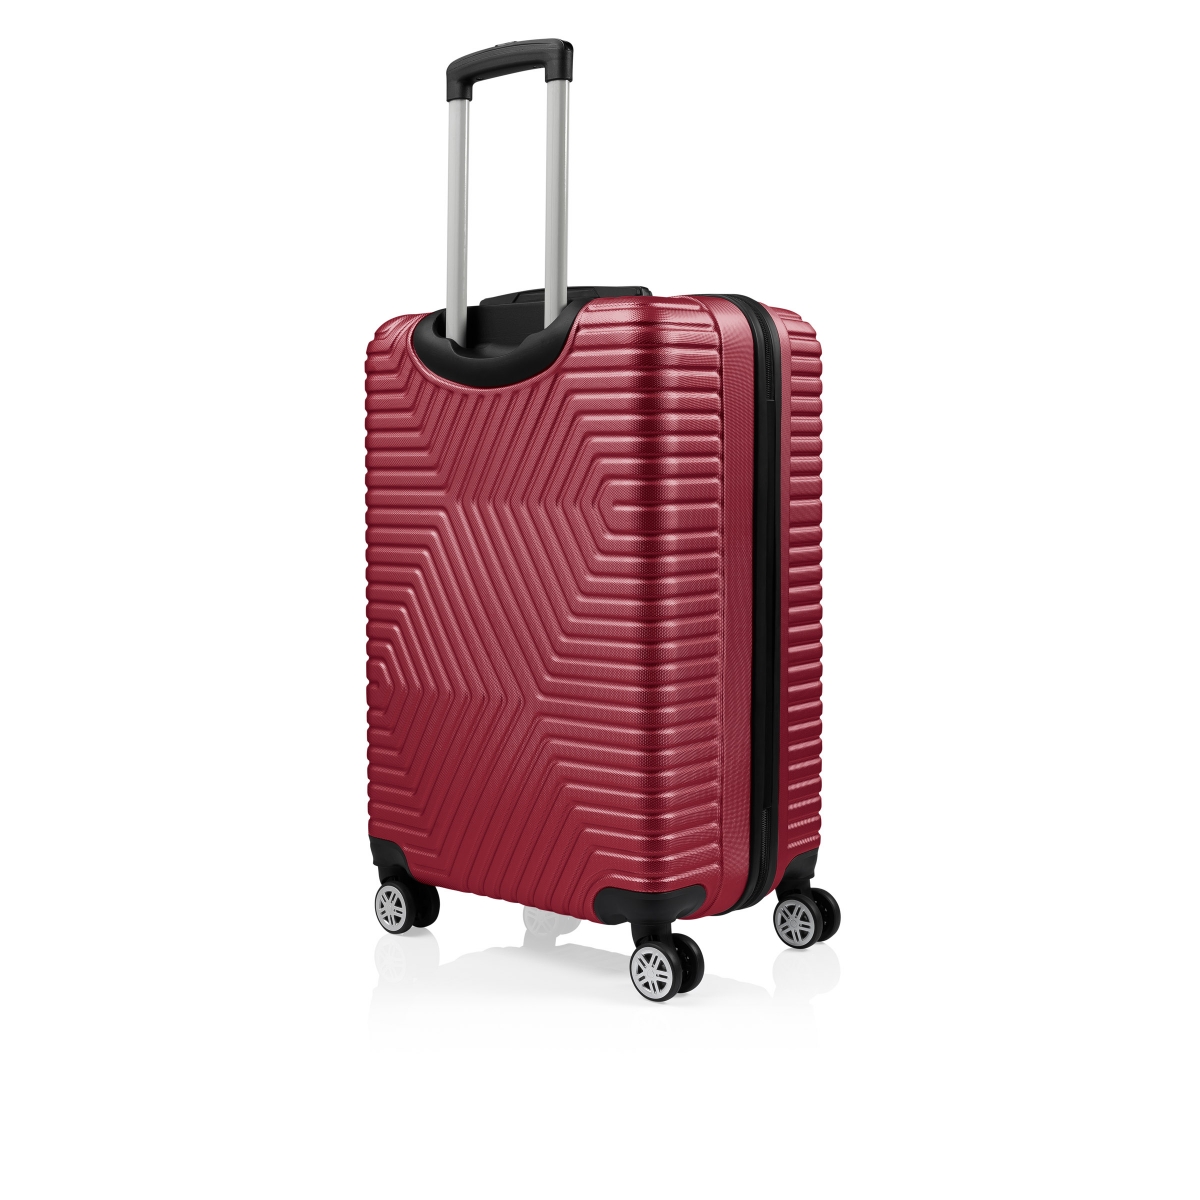 G&D Polo Suitcase ABS 3'lü Lüx Valiz Seyahat Seti - Model:600.13 Bordo